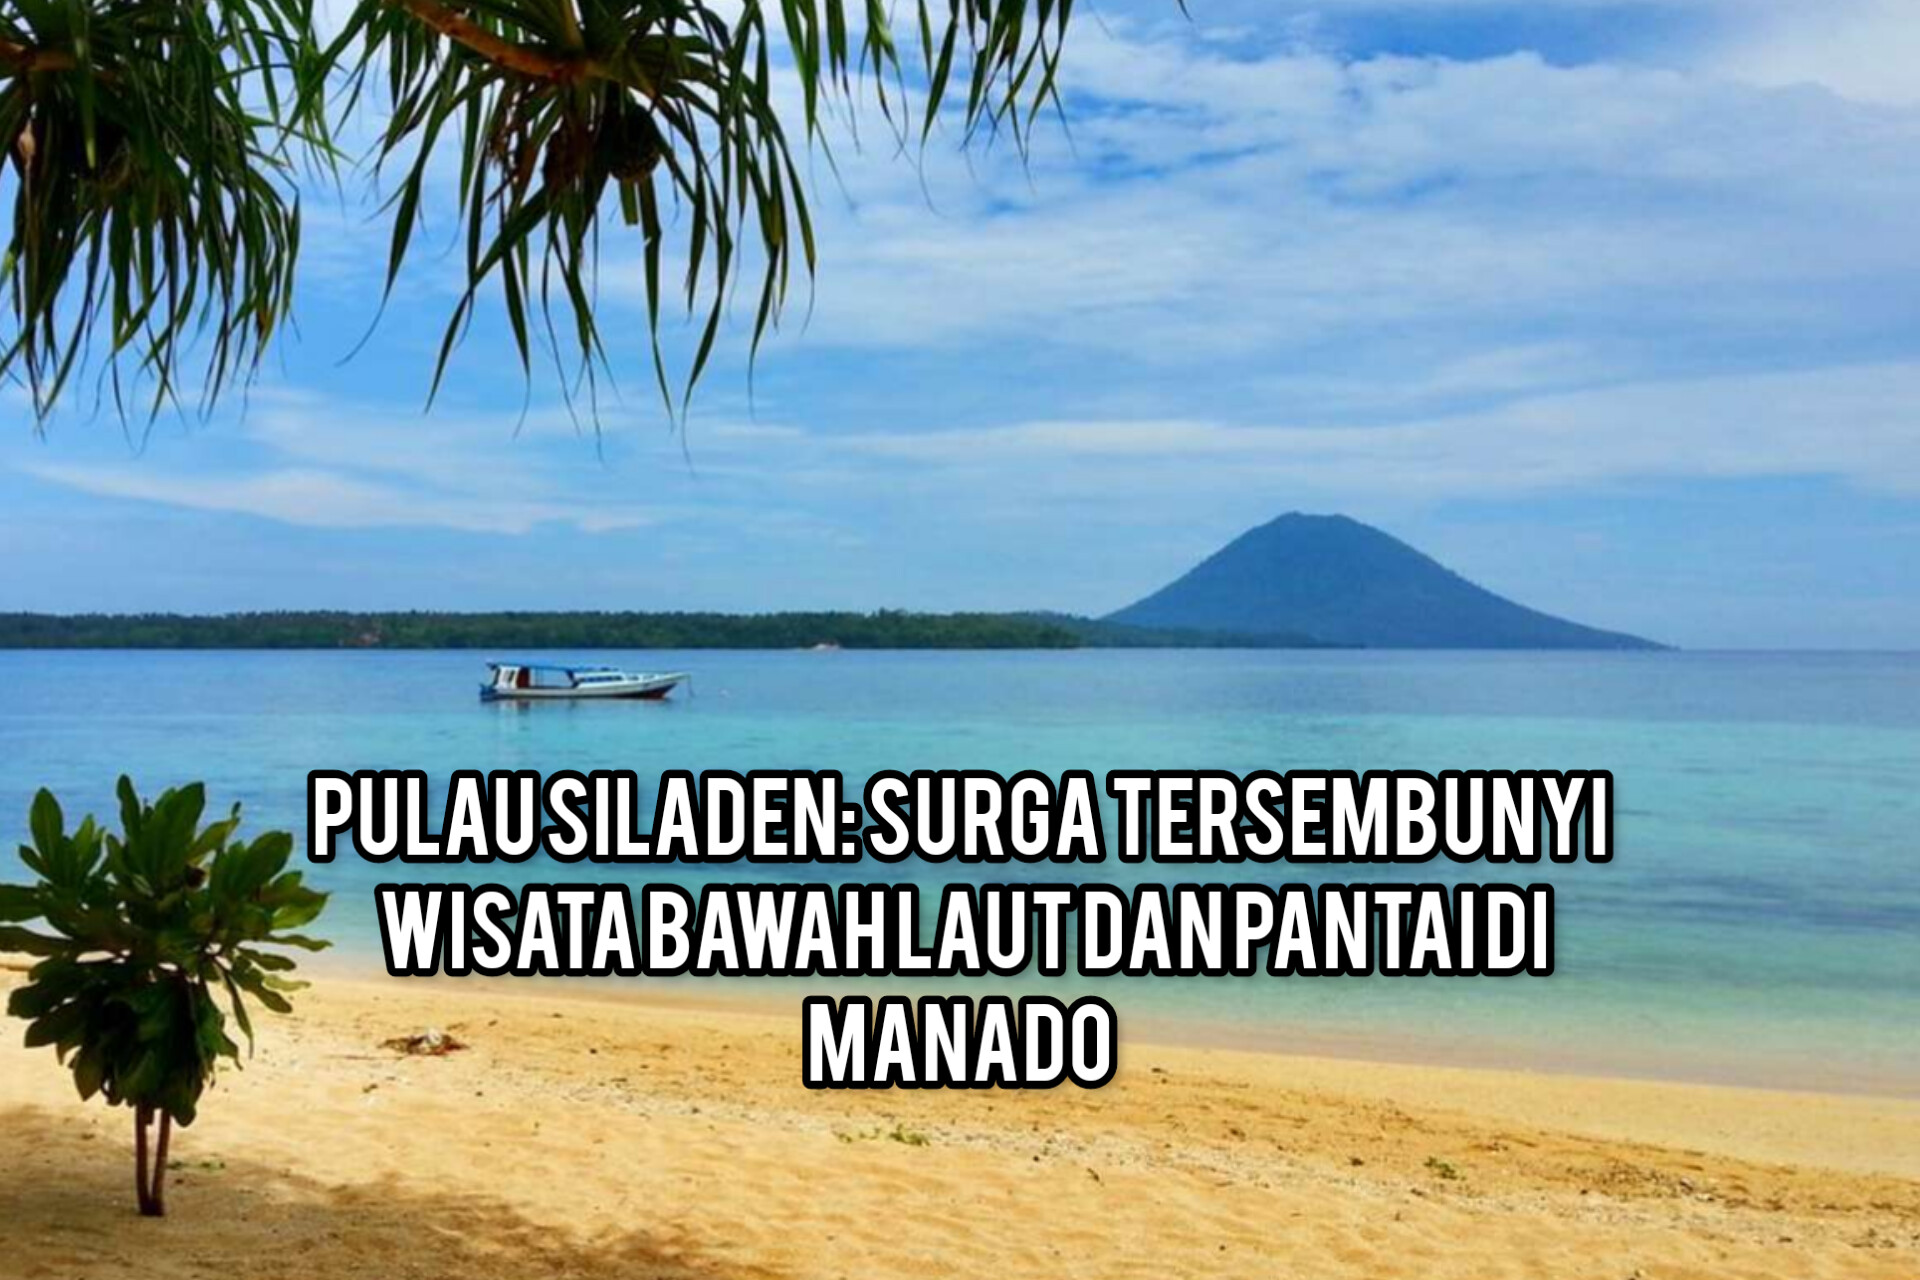 Pulau Siladen: Surga Tersembunyi Wisata Bawah Laut dan Pantai di Manado